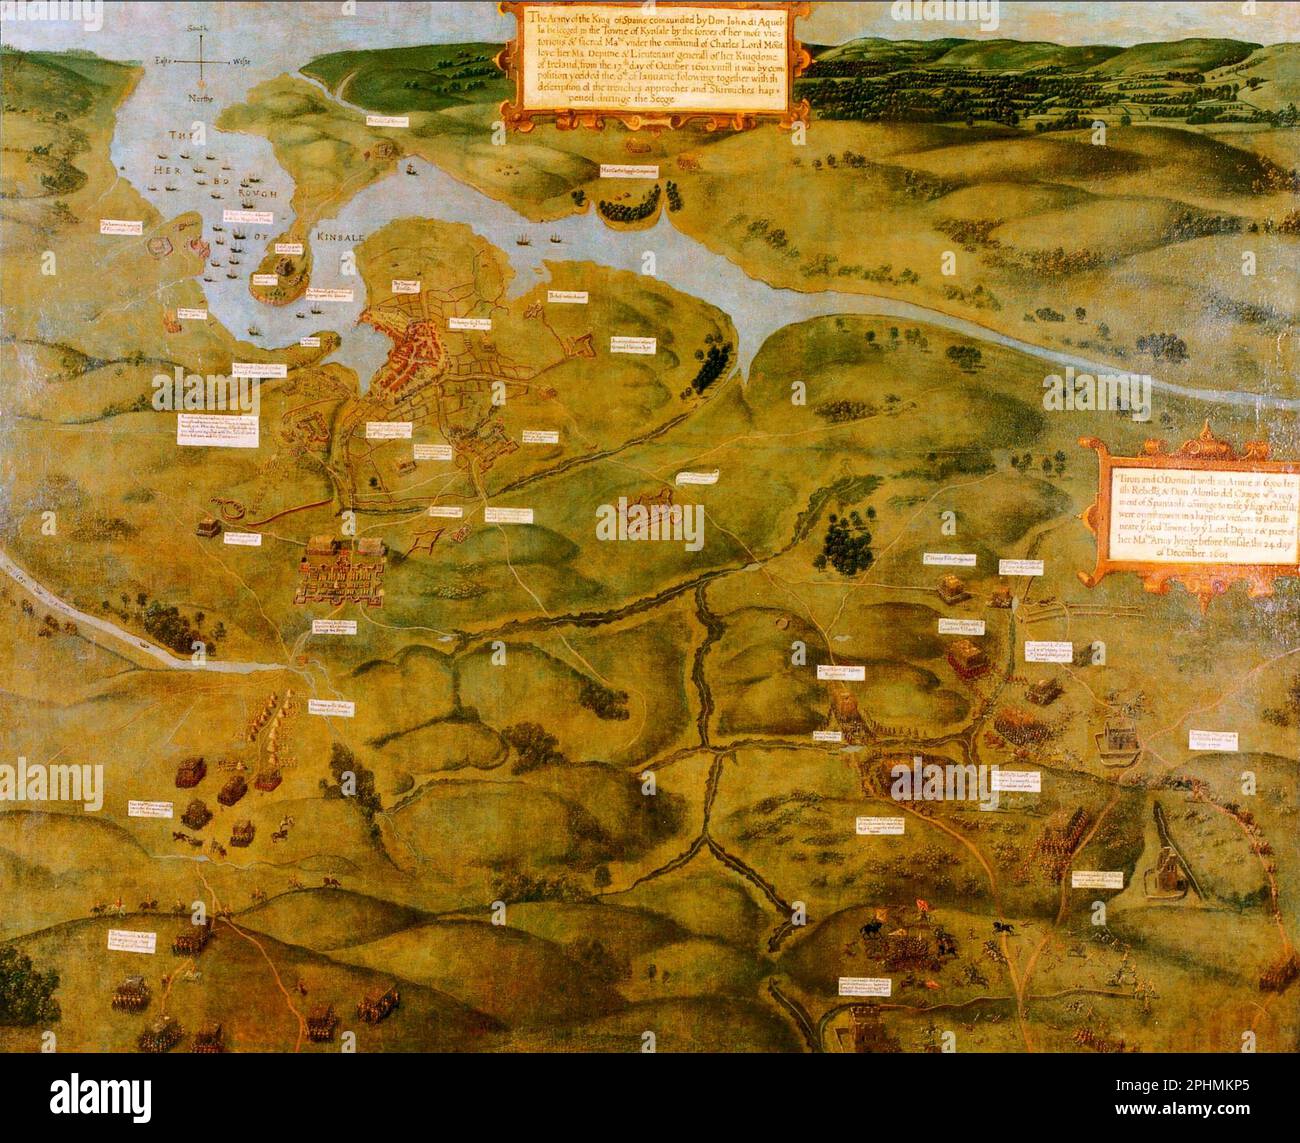 BELAGERUNG VON KINSALE 2. Oktober 1601-3. Januar 1602 - Teil der neunjährigen englischen Eroberung Irlands. Eine zeitgenössische Karte. Stockfoto